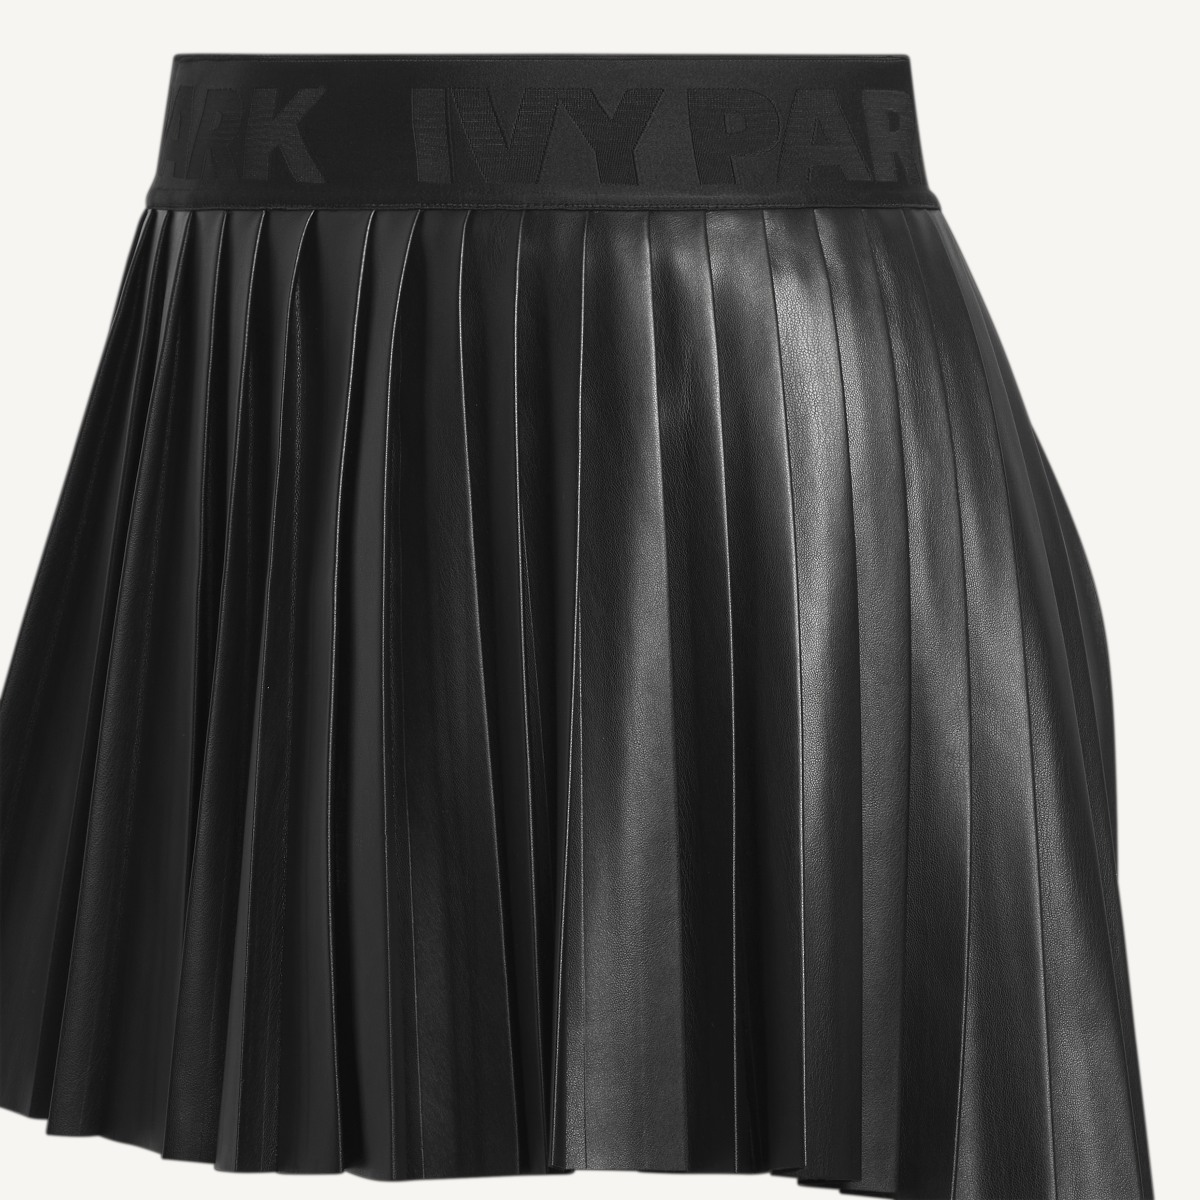 Adidas Leather Pleated Mini Skirt (Plus Size). 6